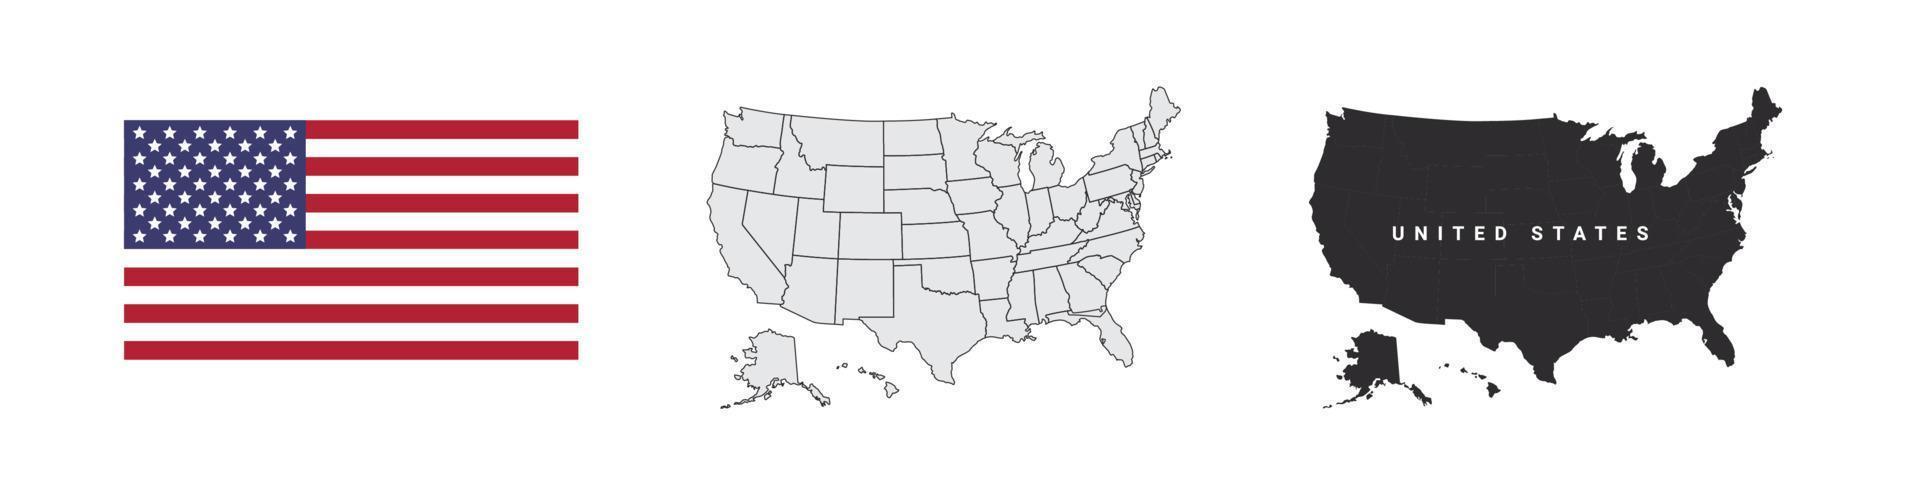 Verenigde Staten van Amerika etiketten. Verenigde Staten van Amerika staten kaart. kaart en vlag van Amerika. vector illustratie